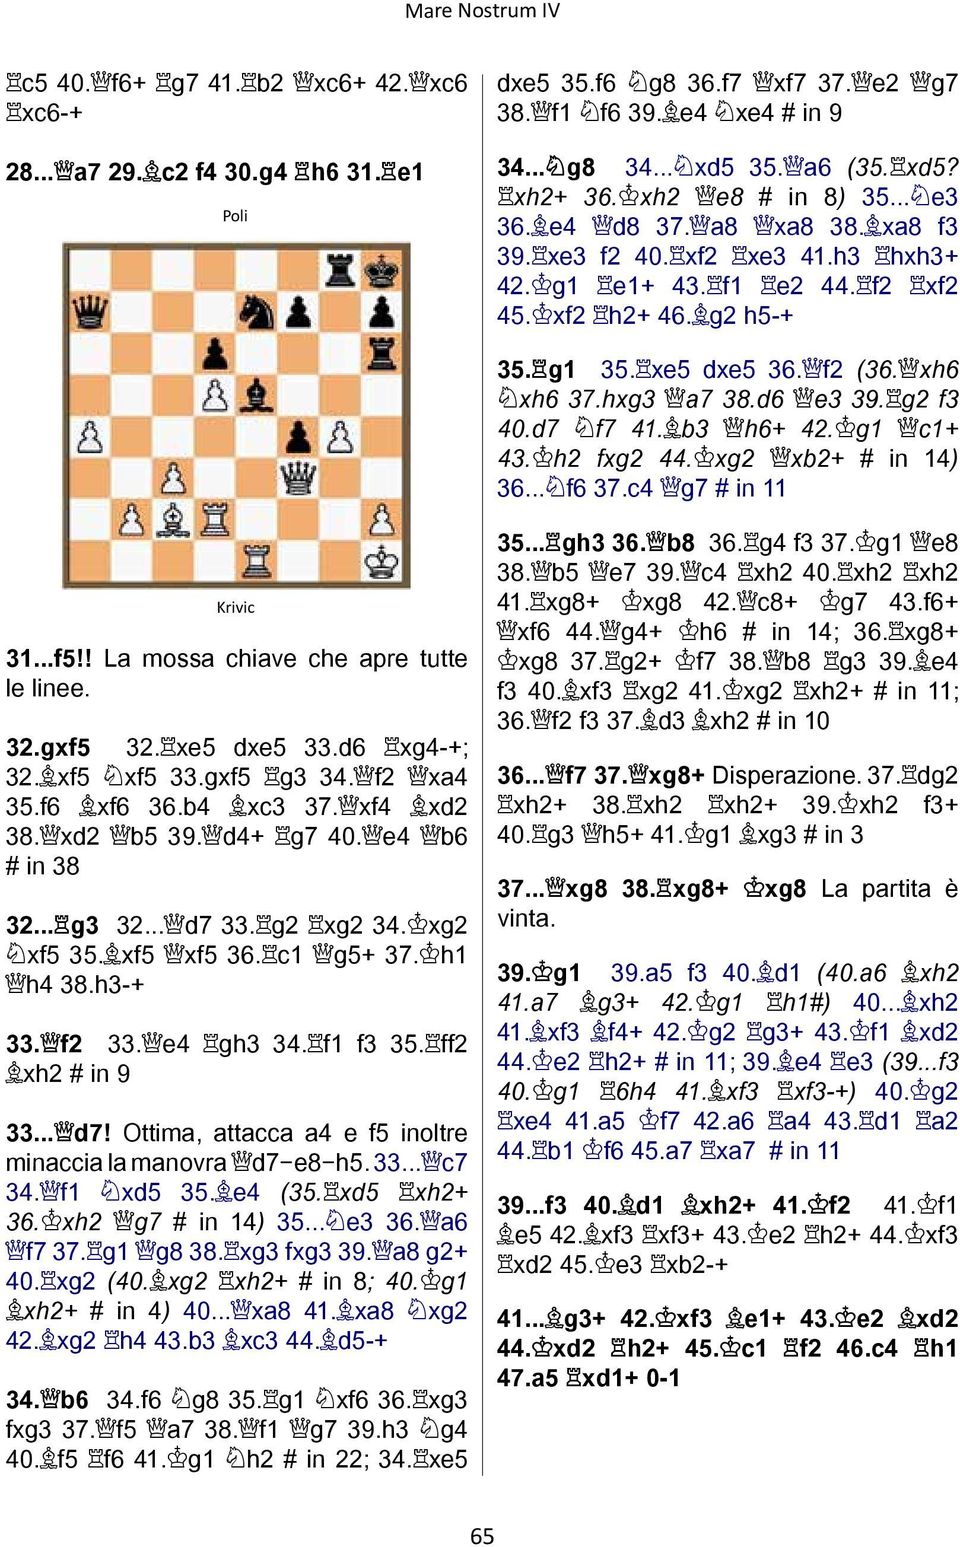 hxg3 a7 38.d6 e3 39. g2 f3 40.d7 f7 41. b3 h6+ 42. g1 c1+ 43. h2 fxg2 44. xg2 xb2+ # in 14) 36... f6 37.c4 g7 # in 11 Krivic 31...f5!! La mossa chiave che apre tutte le linee. 32.gxf5 32. xe5 dxe5 33.